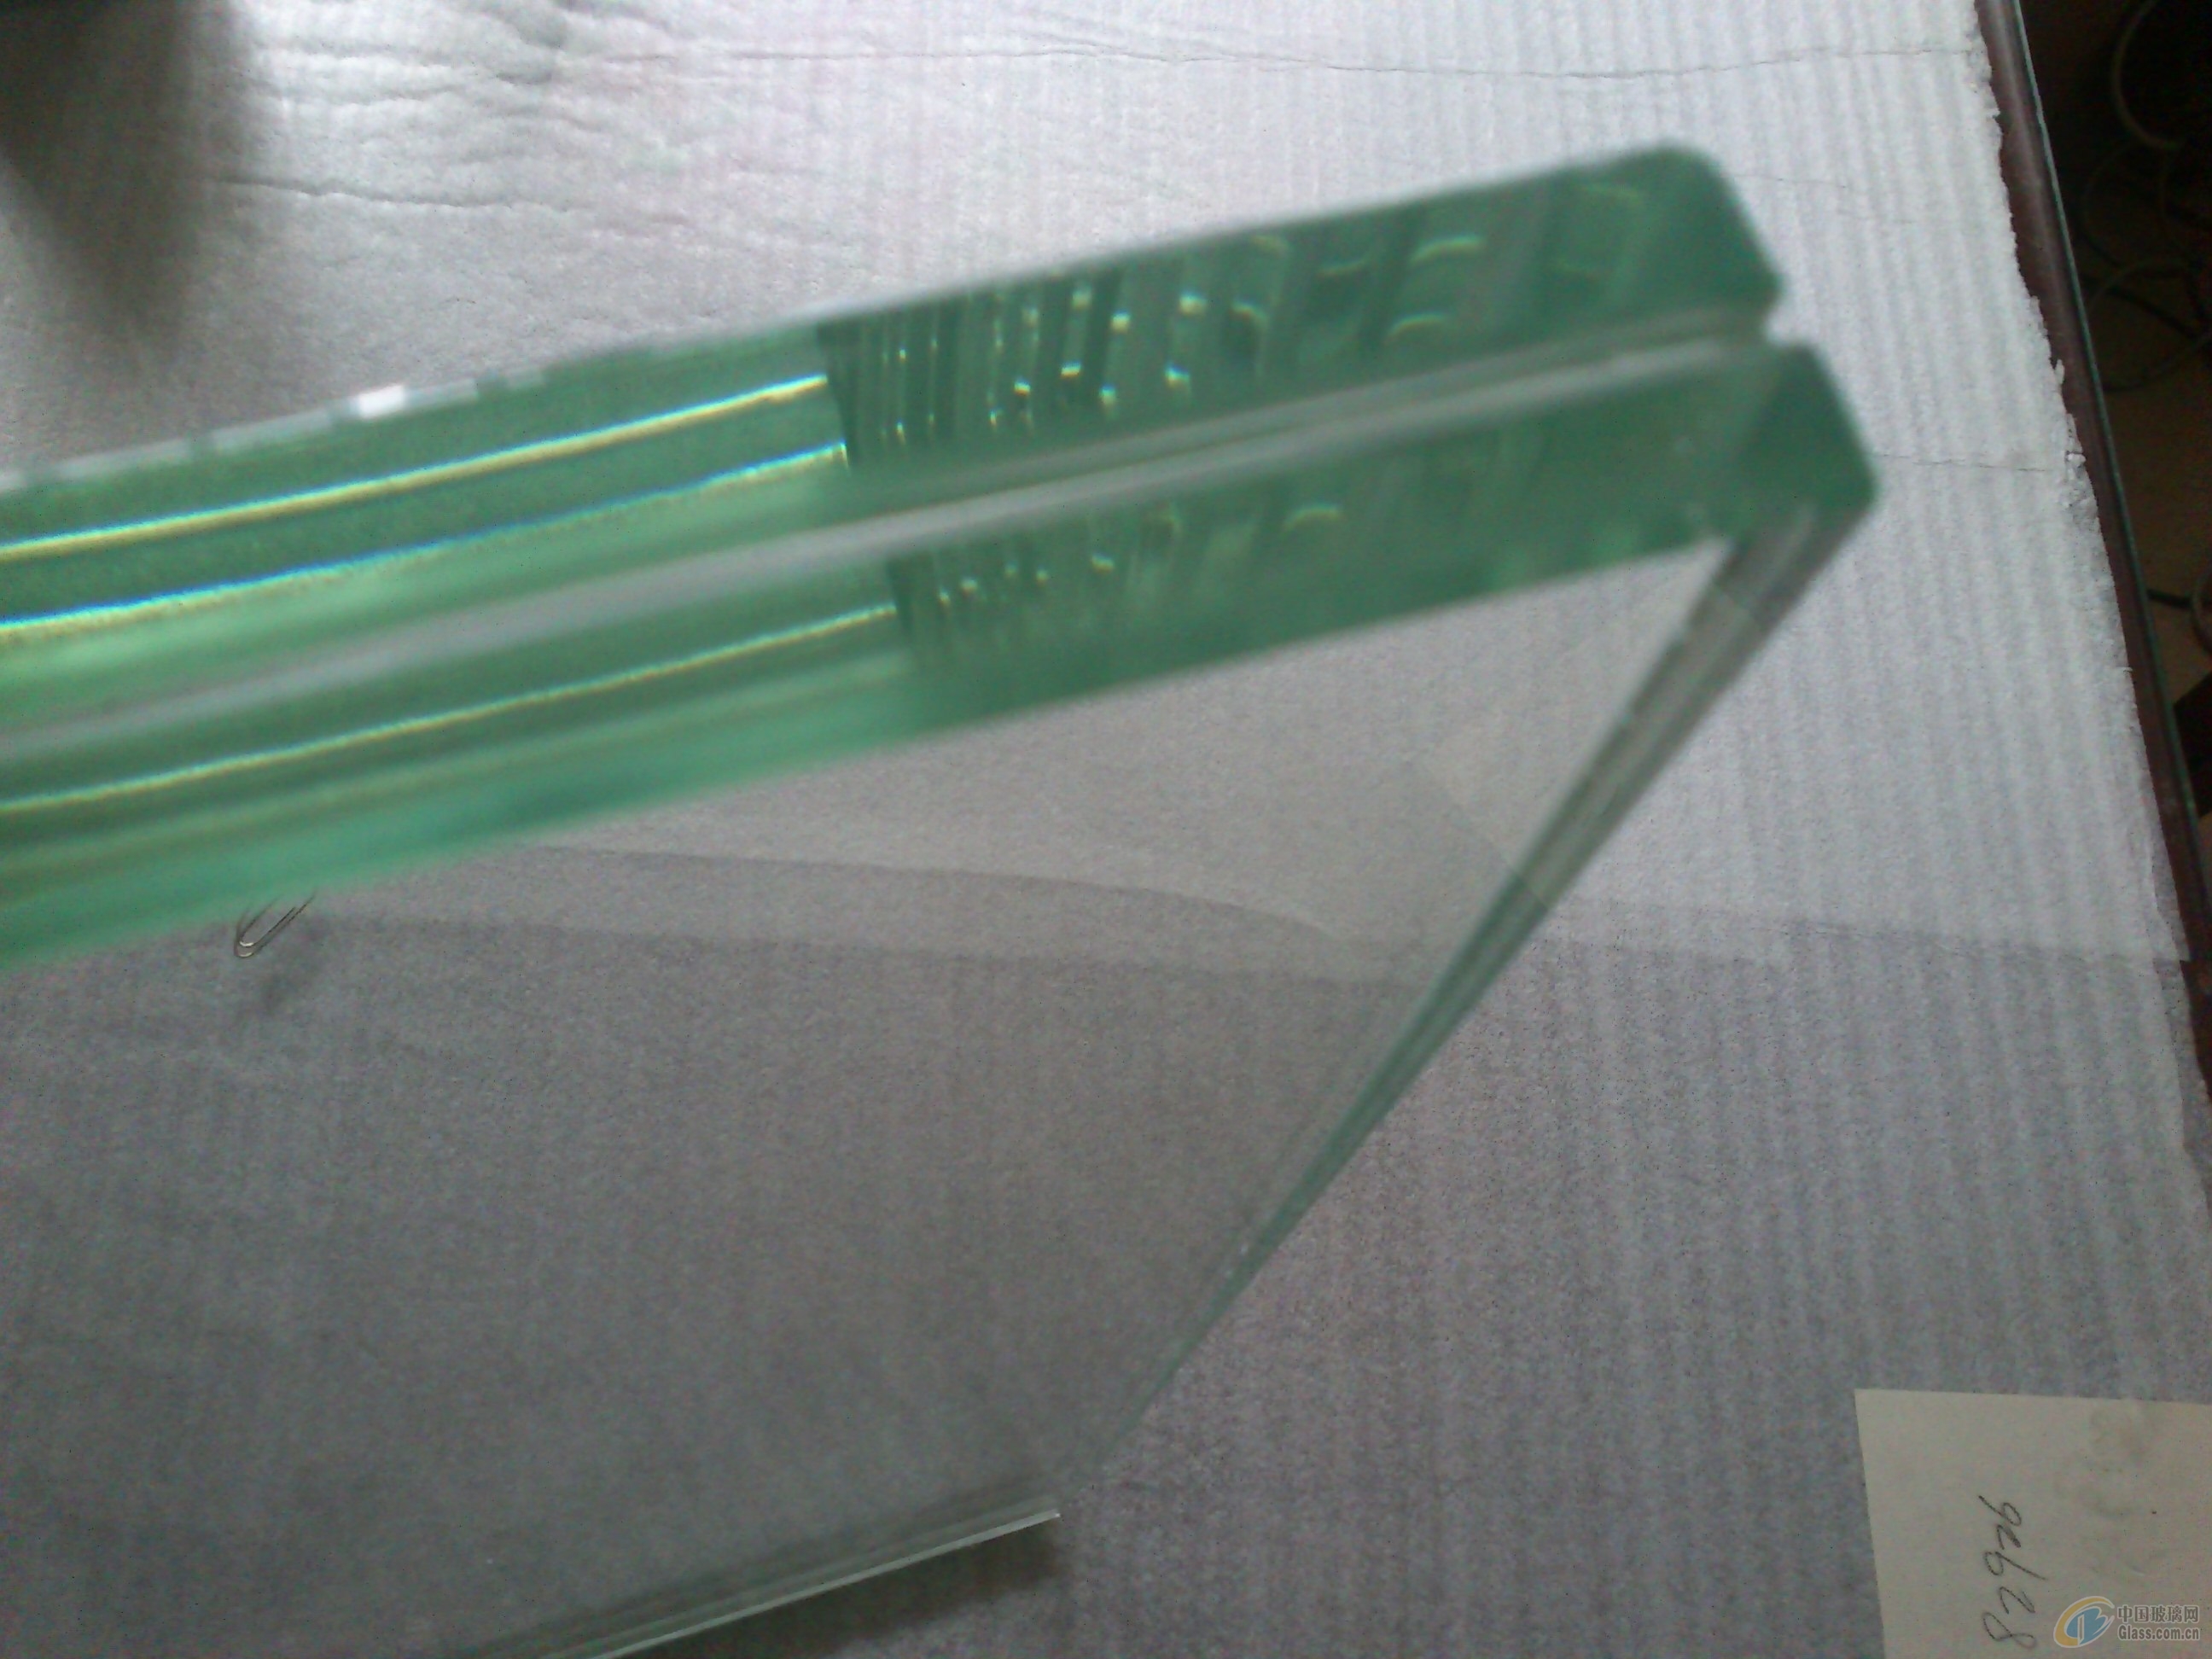 2mm超白玻璃 超薄玻璃-原片玻璃-超白玻璃 超薄玻璃 超白浮法玻璃-上海翼利玻璃制品有限公司